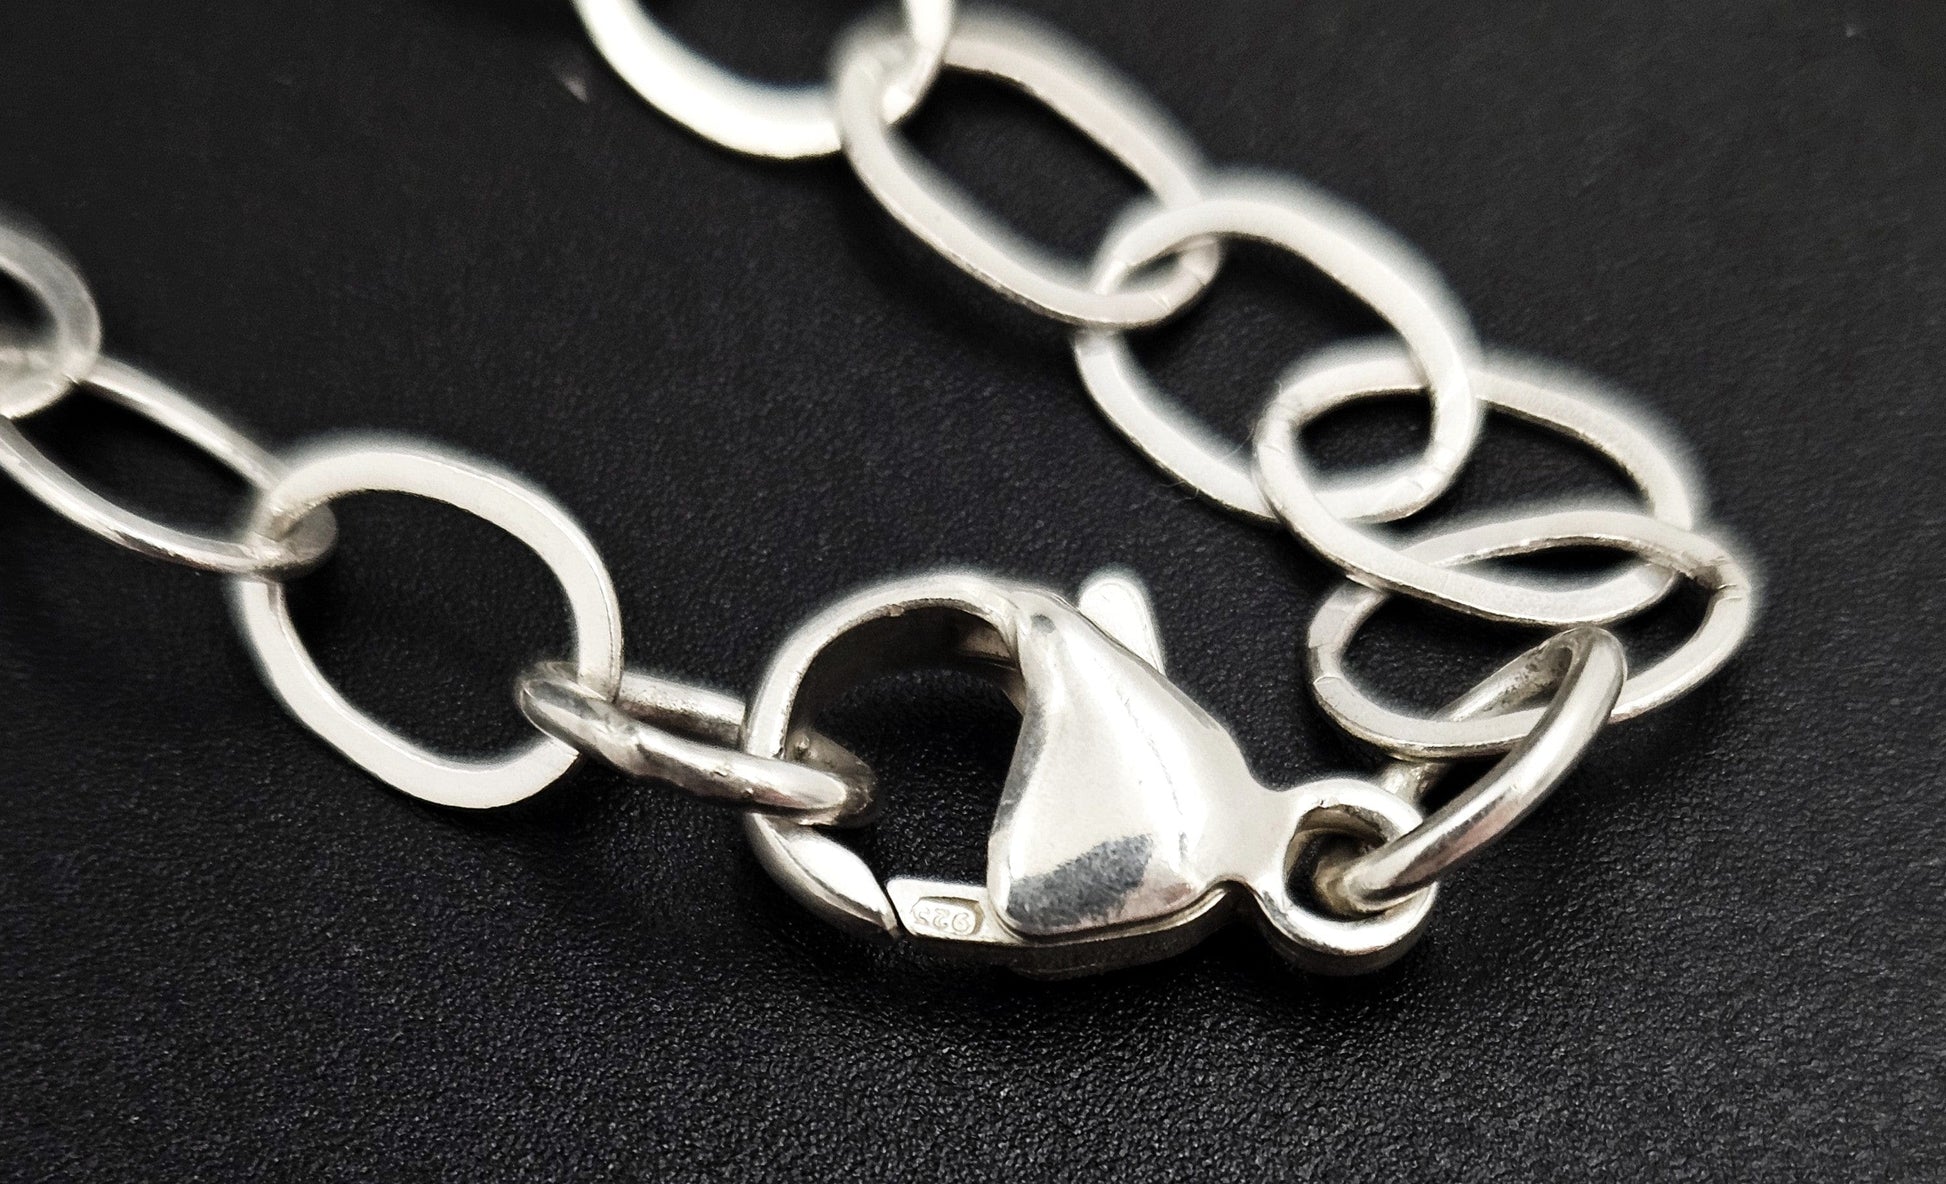 Pierre Cardin Jewelry Designer Pierre Cardin 4 Feet Long Sterling Silver Necklace Circa 1960's